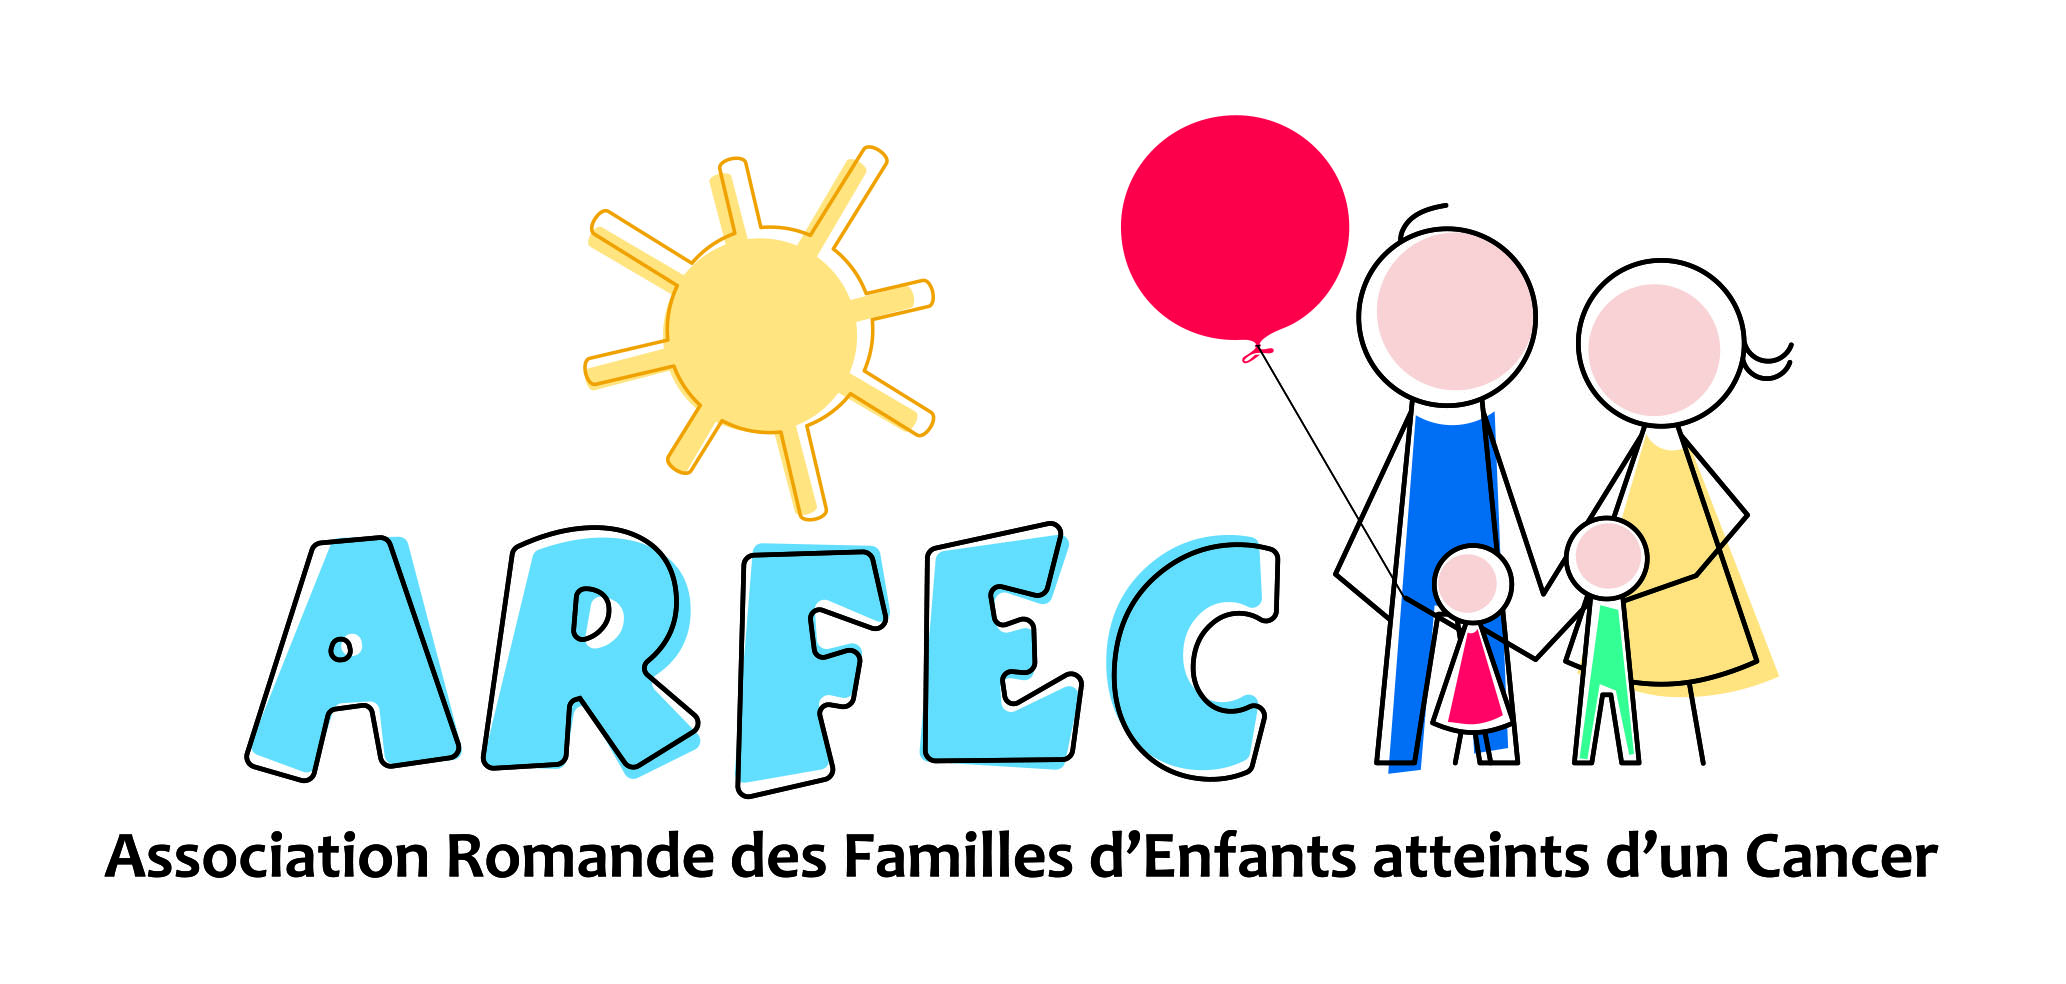 ARFEC (Association Romande des Familles d'Enfants atteints d'un Cancer)